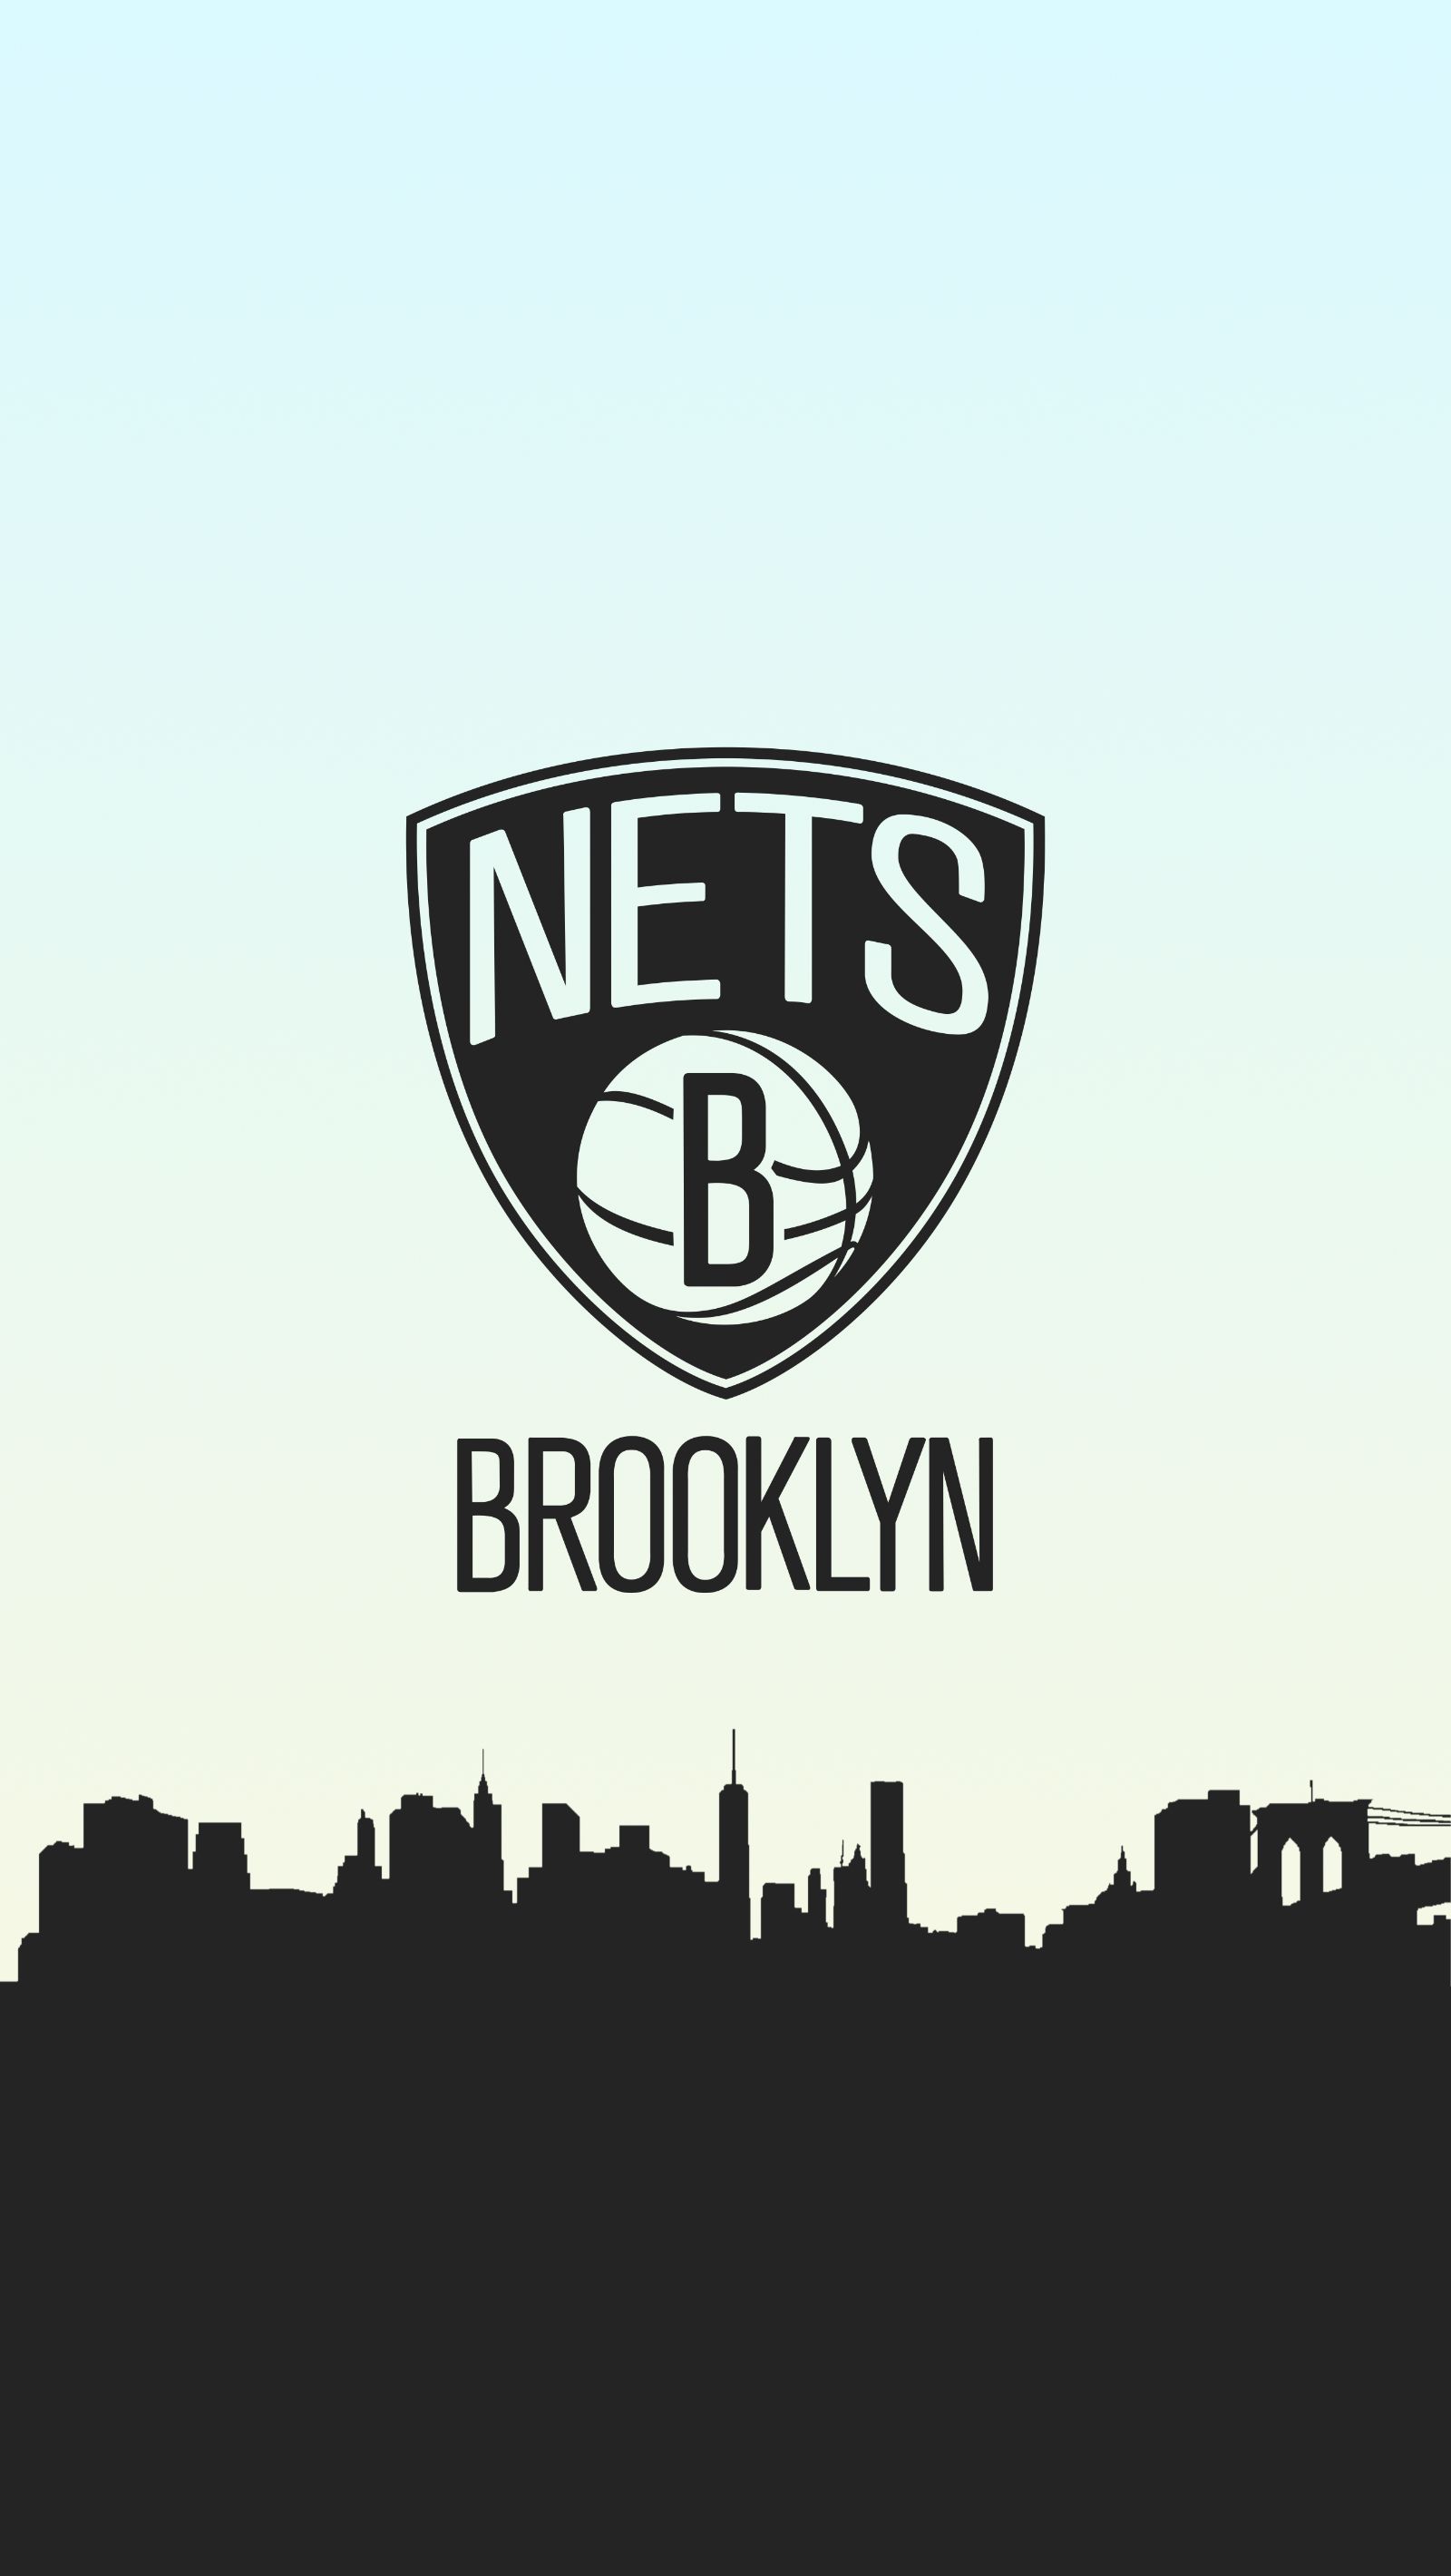 Brooklyn Nets Basketball Phone